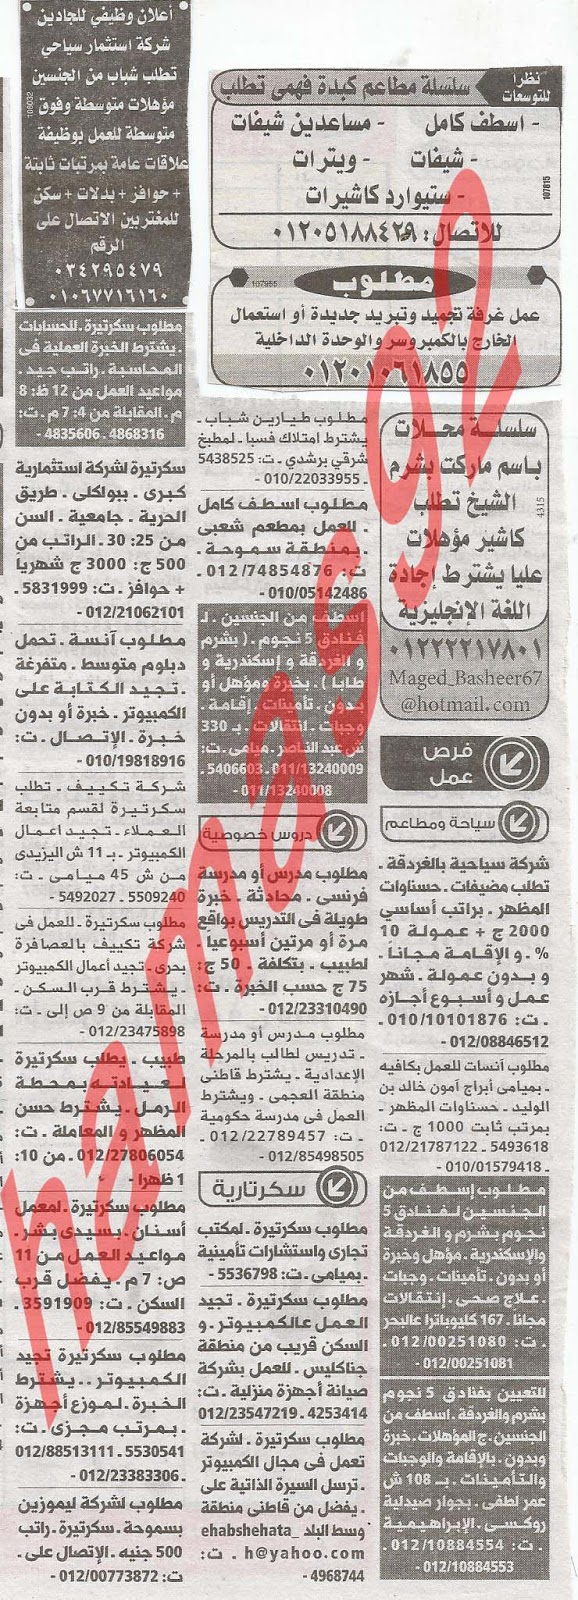 وظائف جريدة الوسيط الاسكندرية الاثنين 25-02-2013 %D9%88+%D8%B3+%D8%B3+1